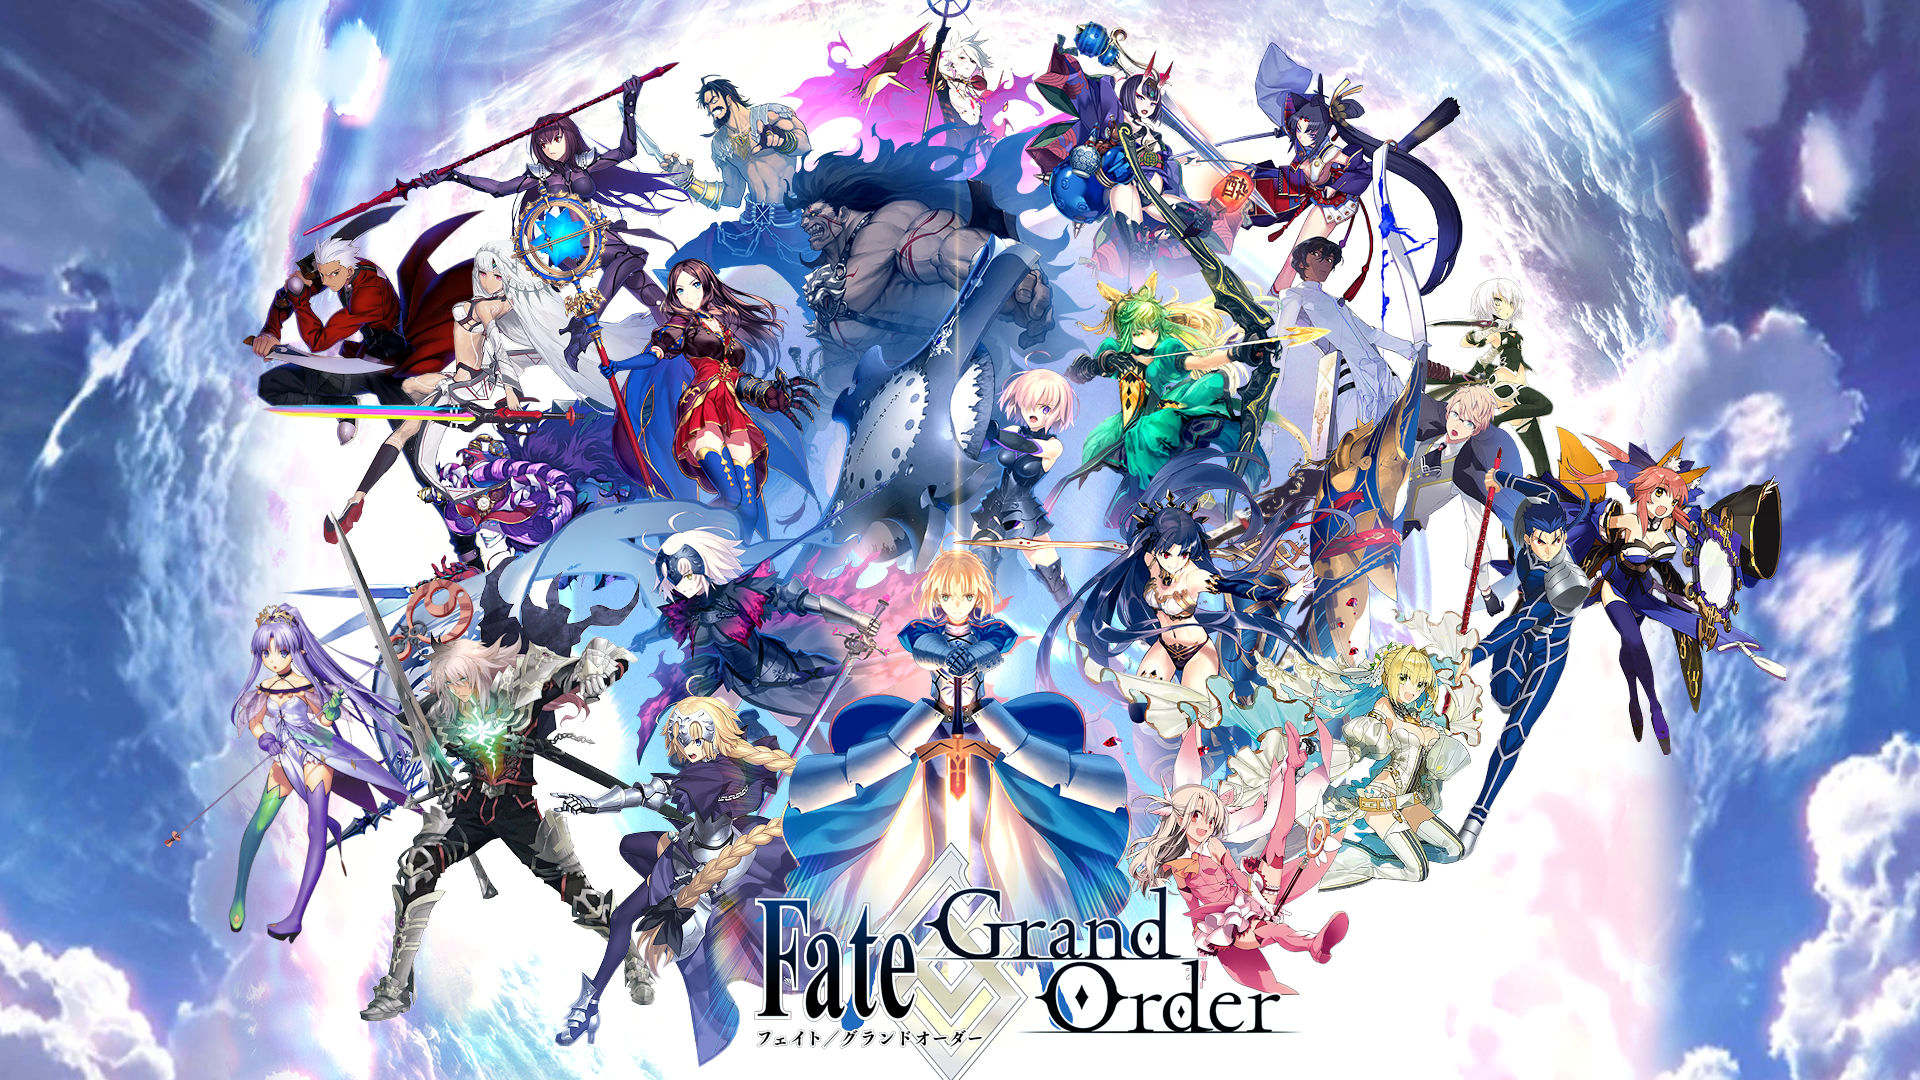 Fate Grand Order 雑談スレッド4 でもにっしょんch